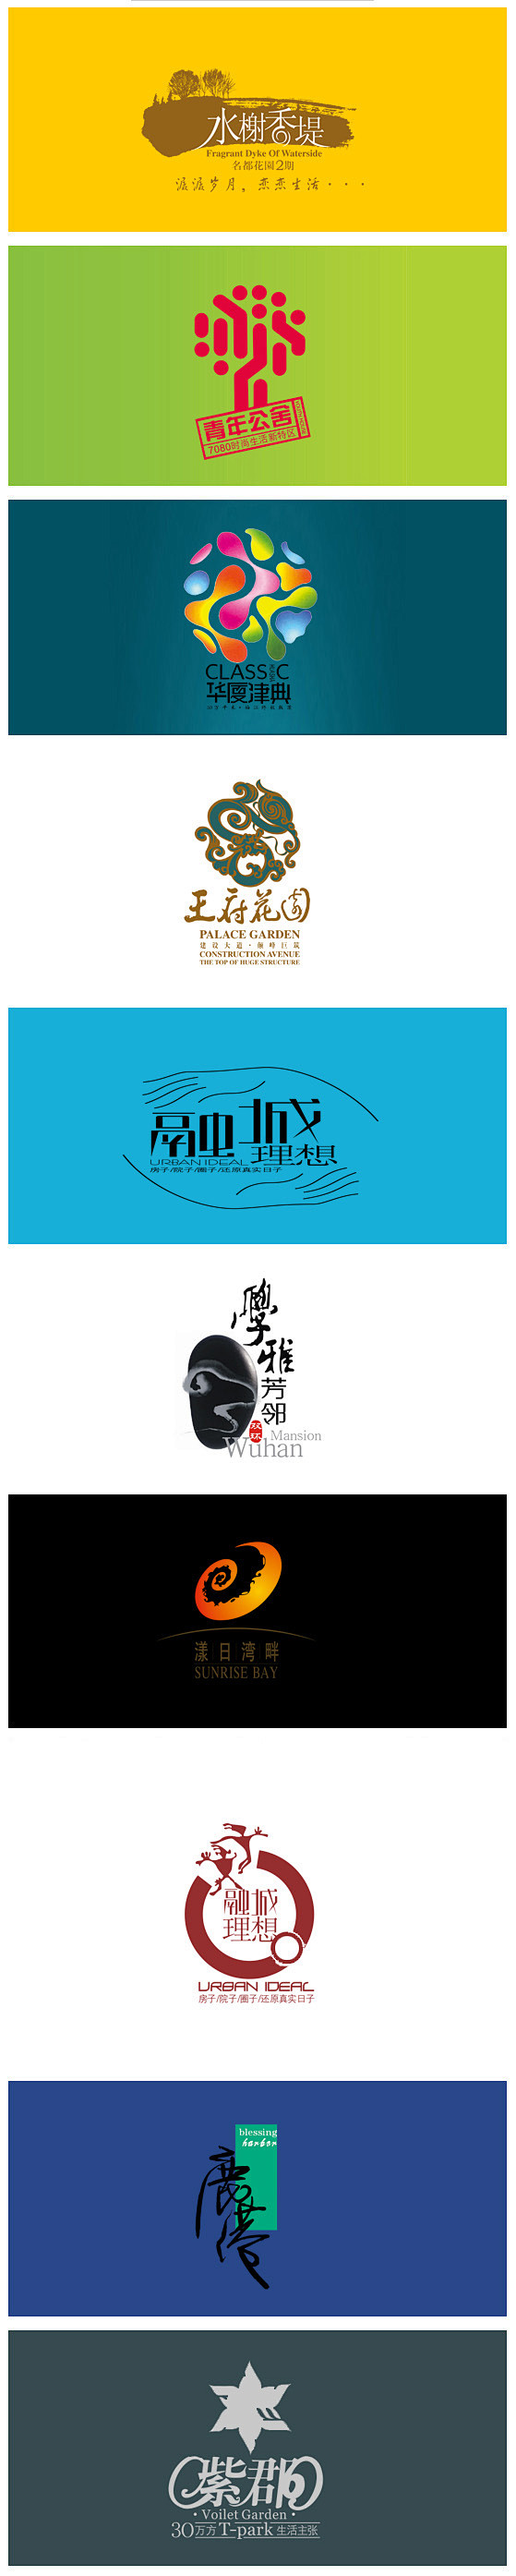 十款房地产矢量logo免费下载_恋迹网